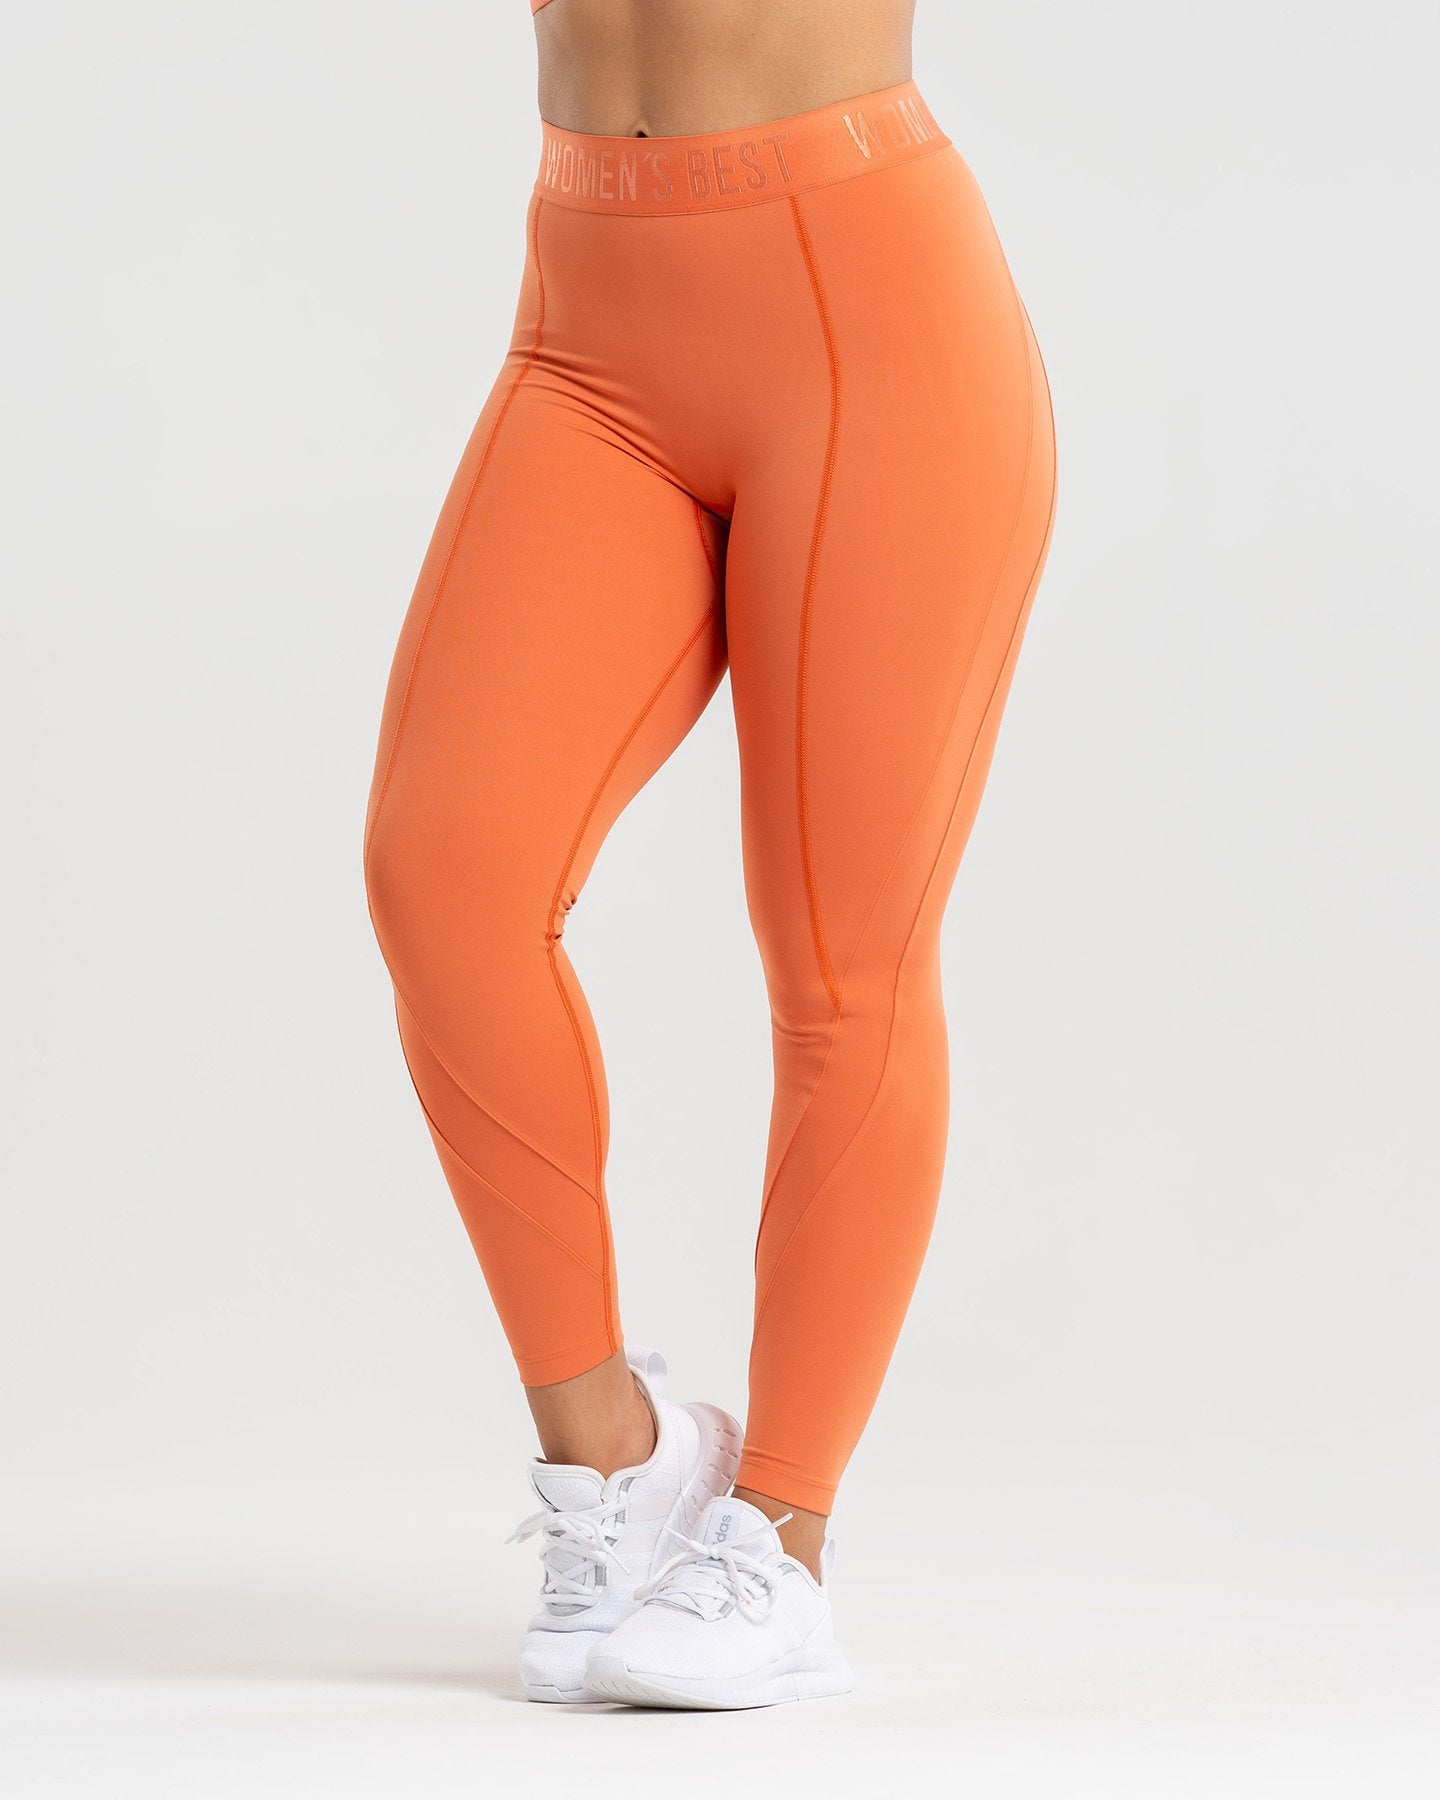 Travel Circumference Encommium orange yoga pants Therefore